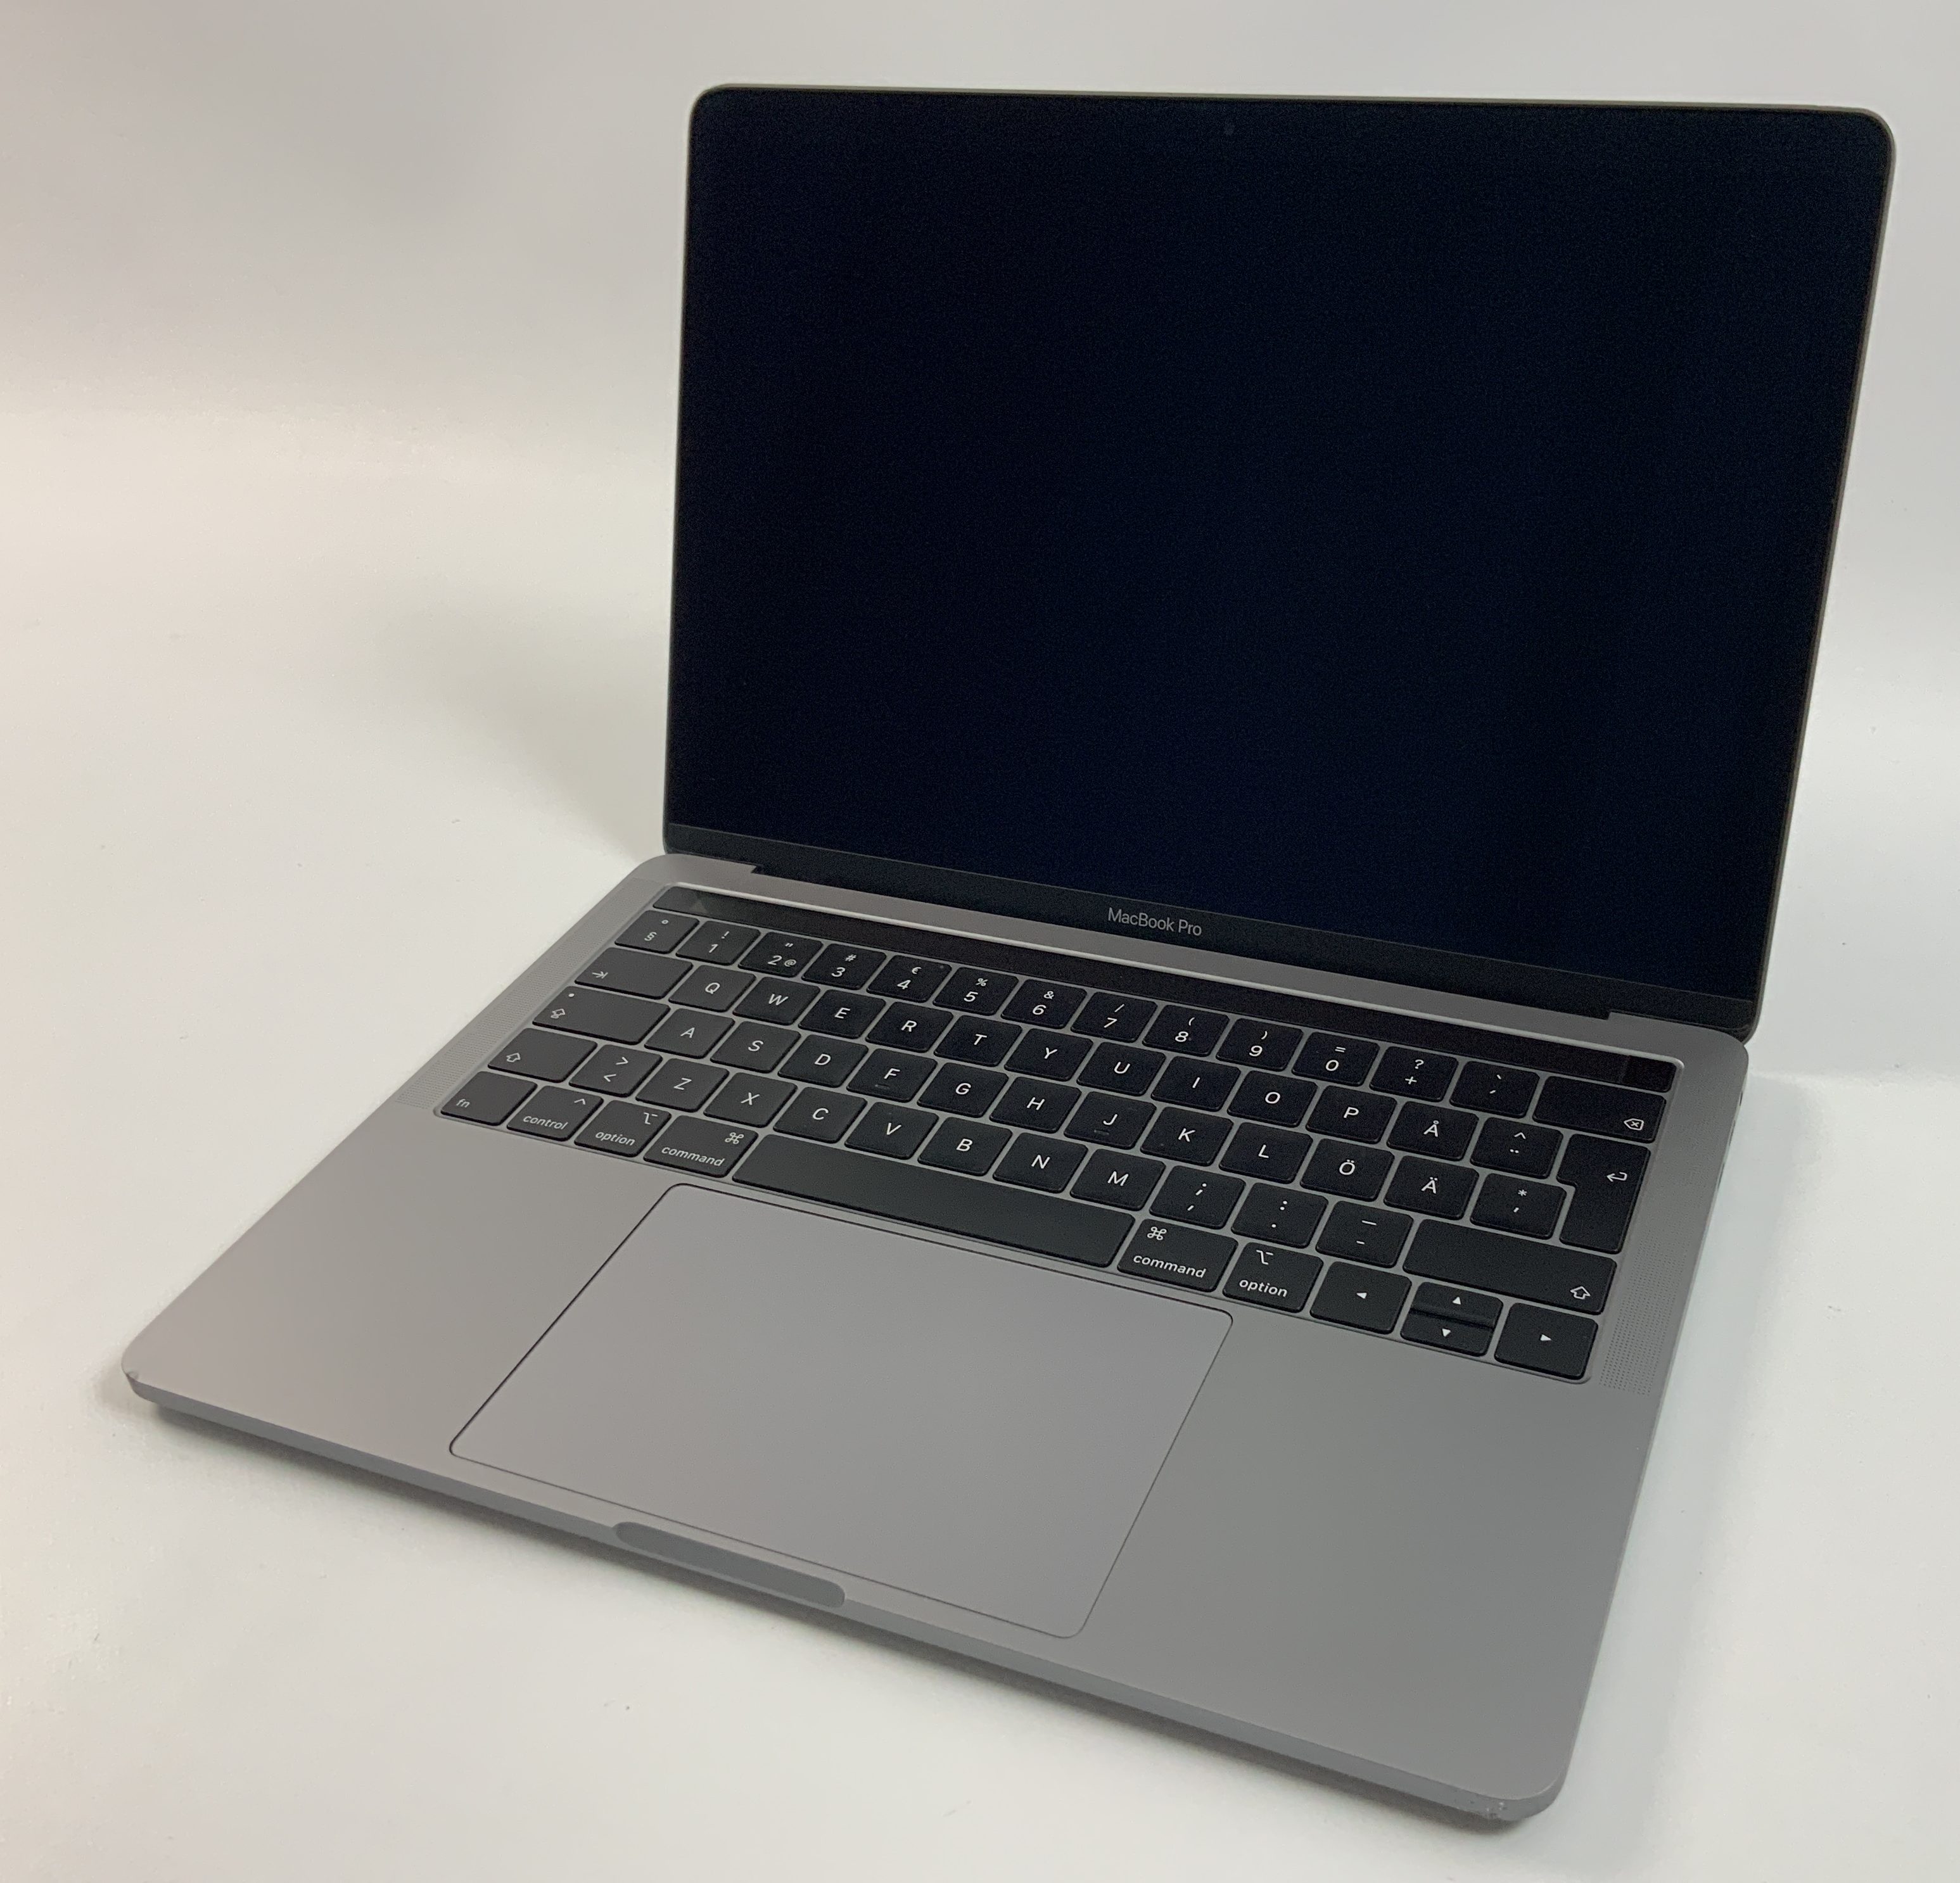 MacBook Pro 13" 4TBT Mid 2019 (Intel Quad-Core i5 2.4 GHz 8 GB RAM 256 GB SSD), Space Gray, Intel Quad-Core i5 2.4 GHz, 8 GB RAM, 256 GB SSD, obraz 1